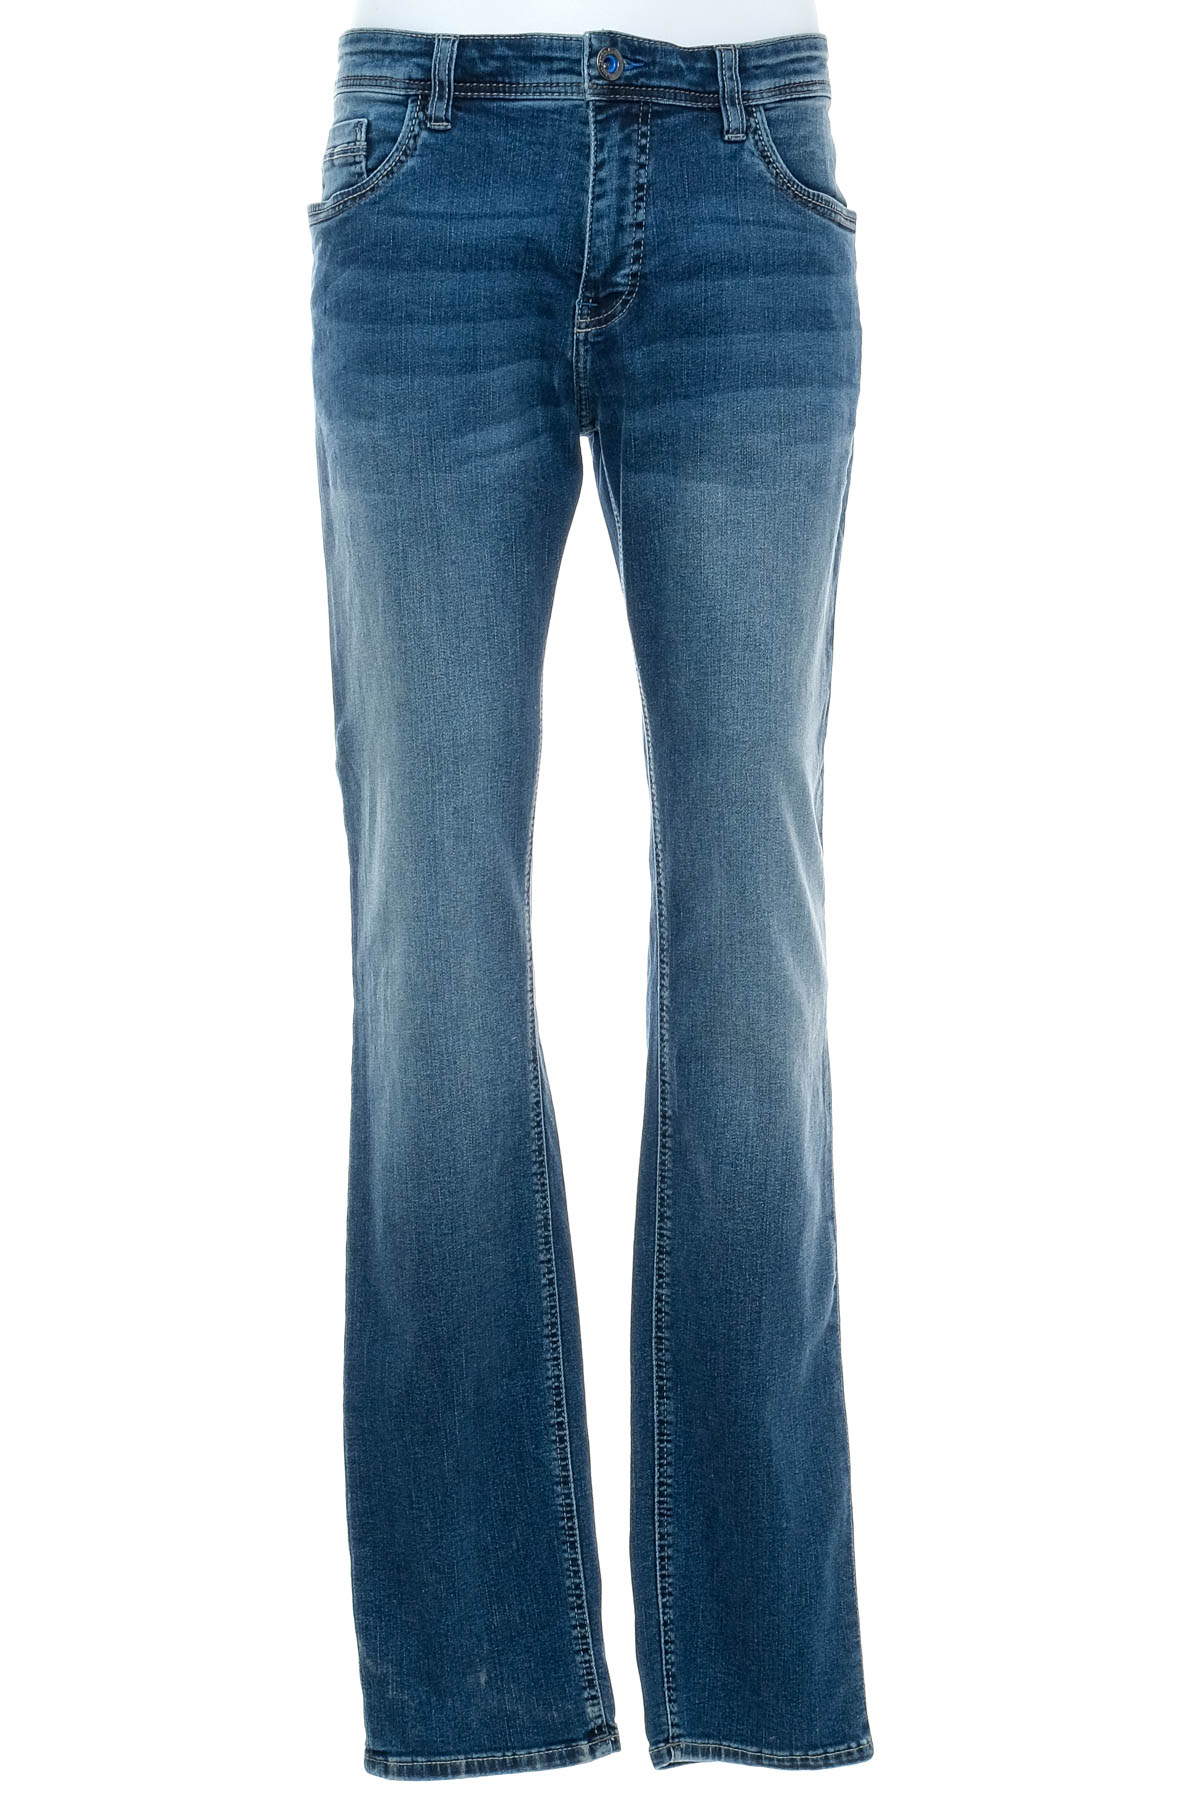 Jeans pentru bărbăți - Jean Carriere - 0